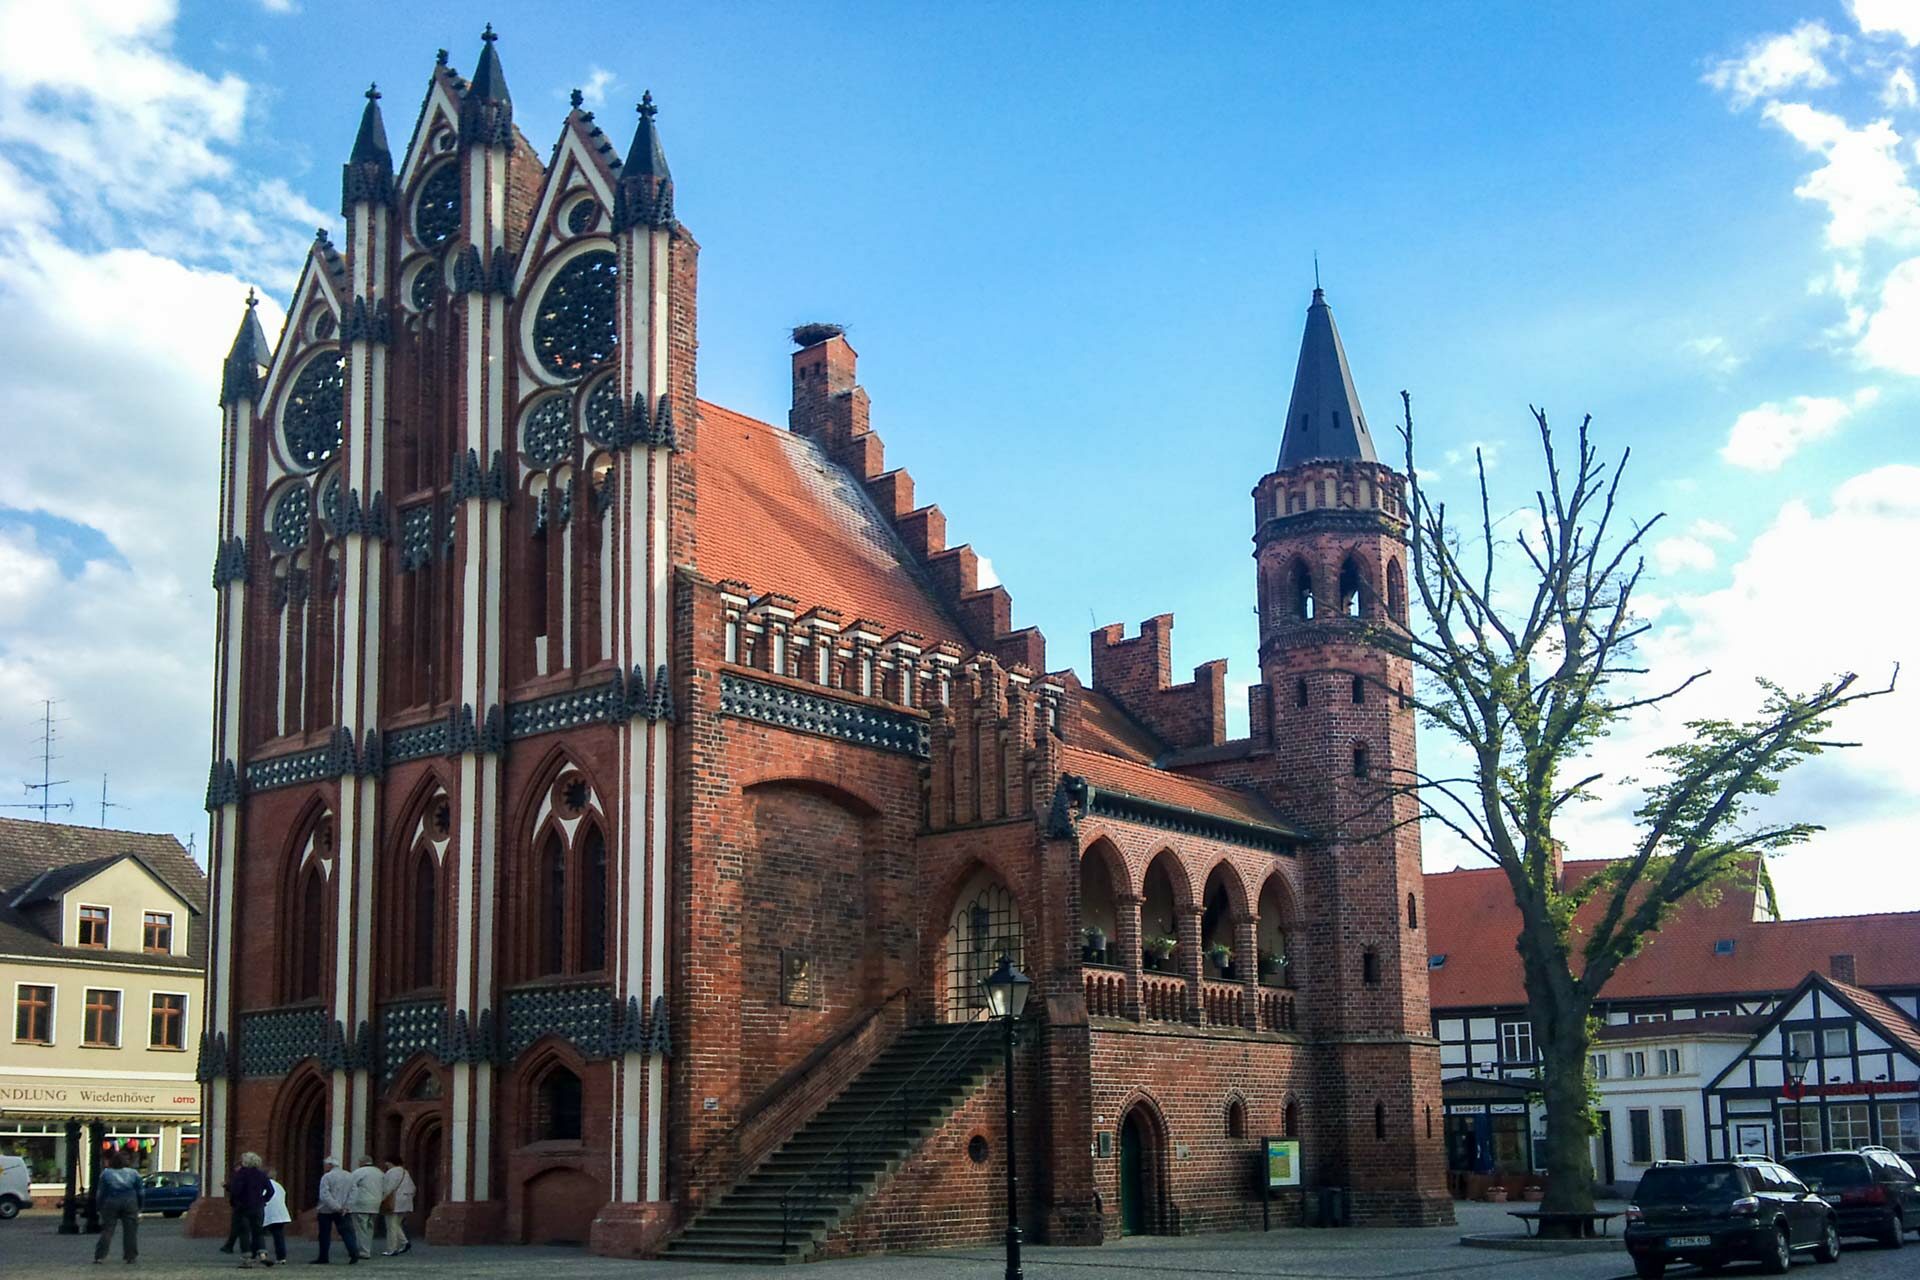 Ja, auch dieses Gebäude ist original erhalten und steht im Zentrum der Stadt Tangermünde. Es handelt sich hierbei um das Rathaus und man sieht ihm an, wie reich die Stadt im Mittelalter gewesen sein muss.